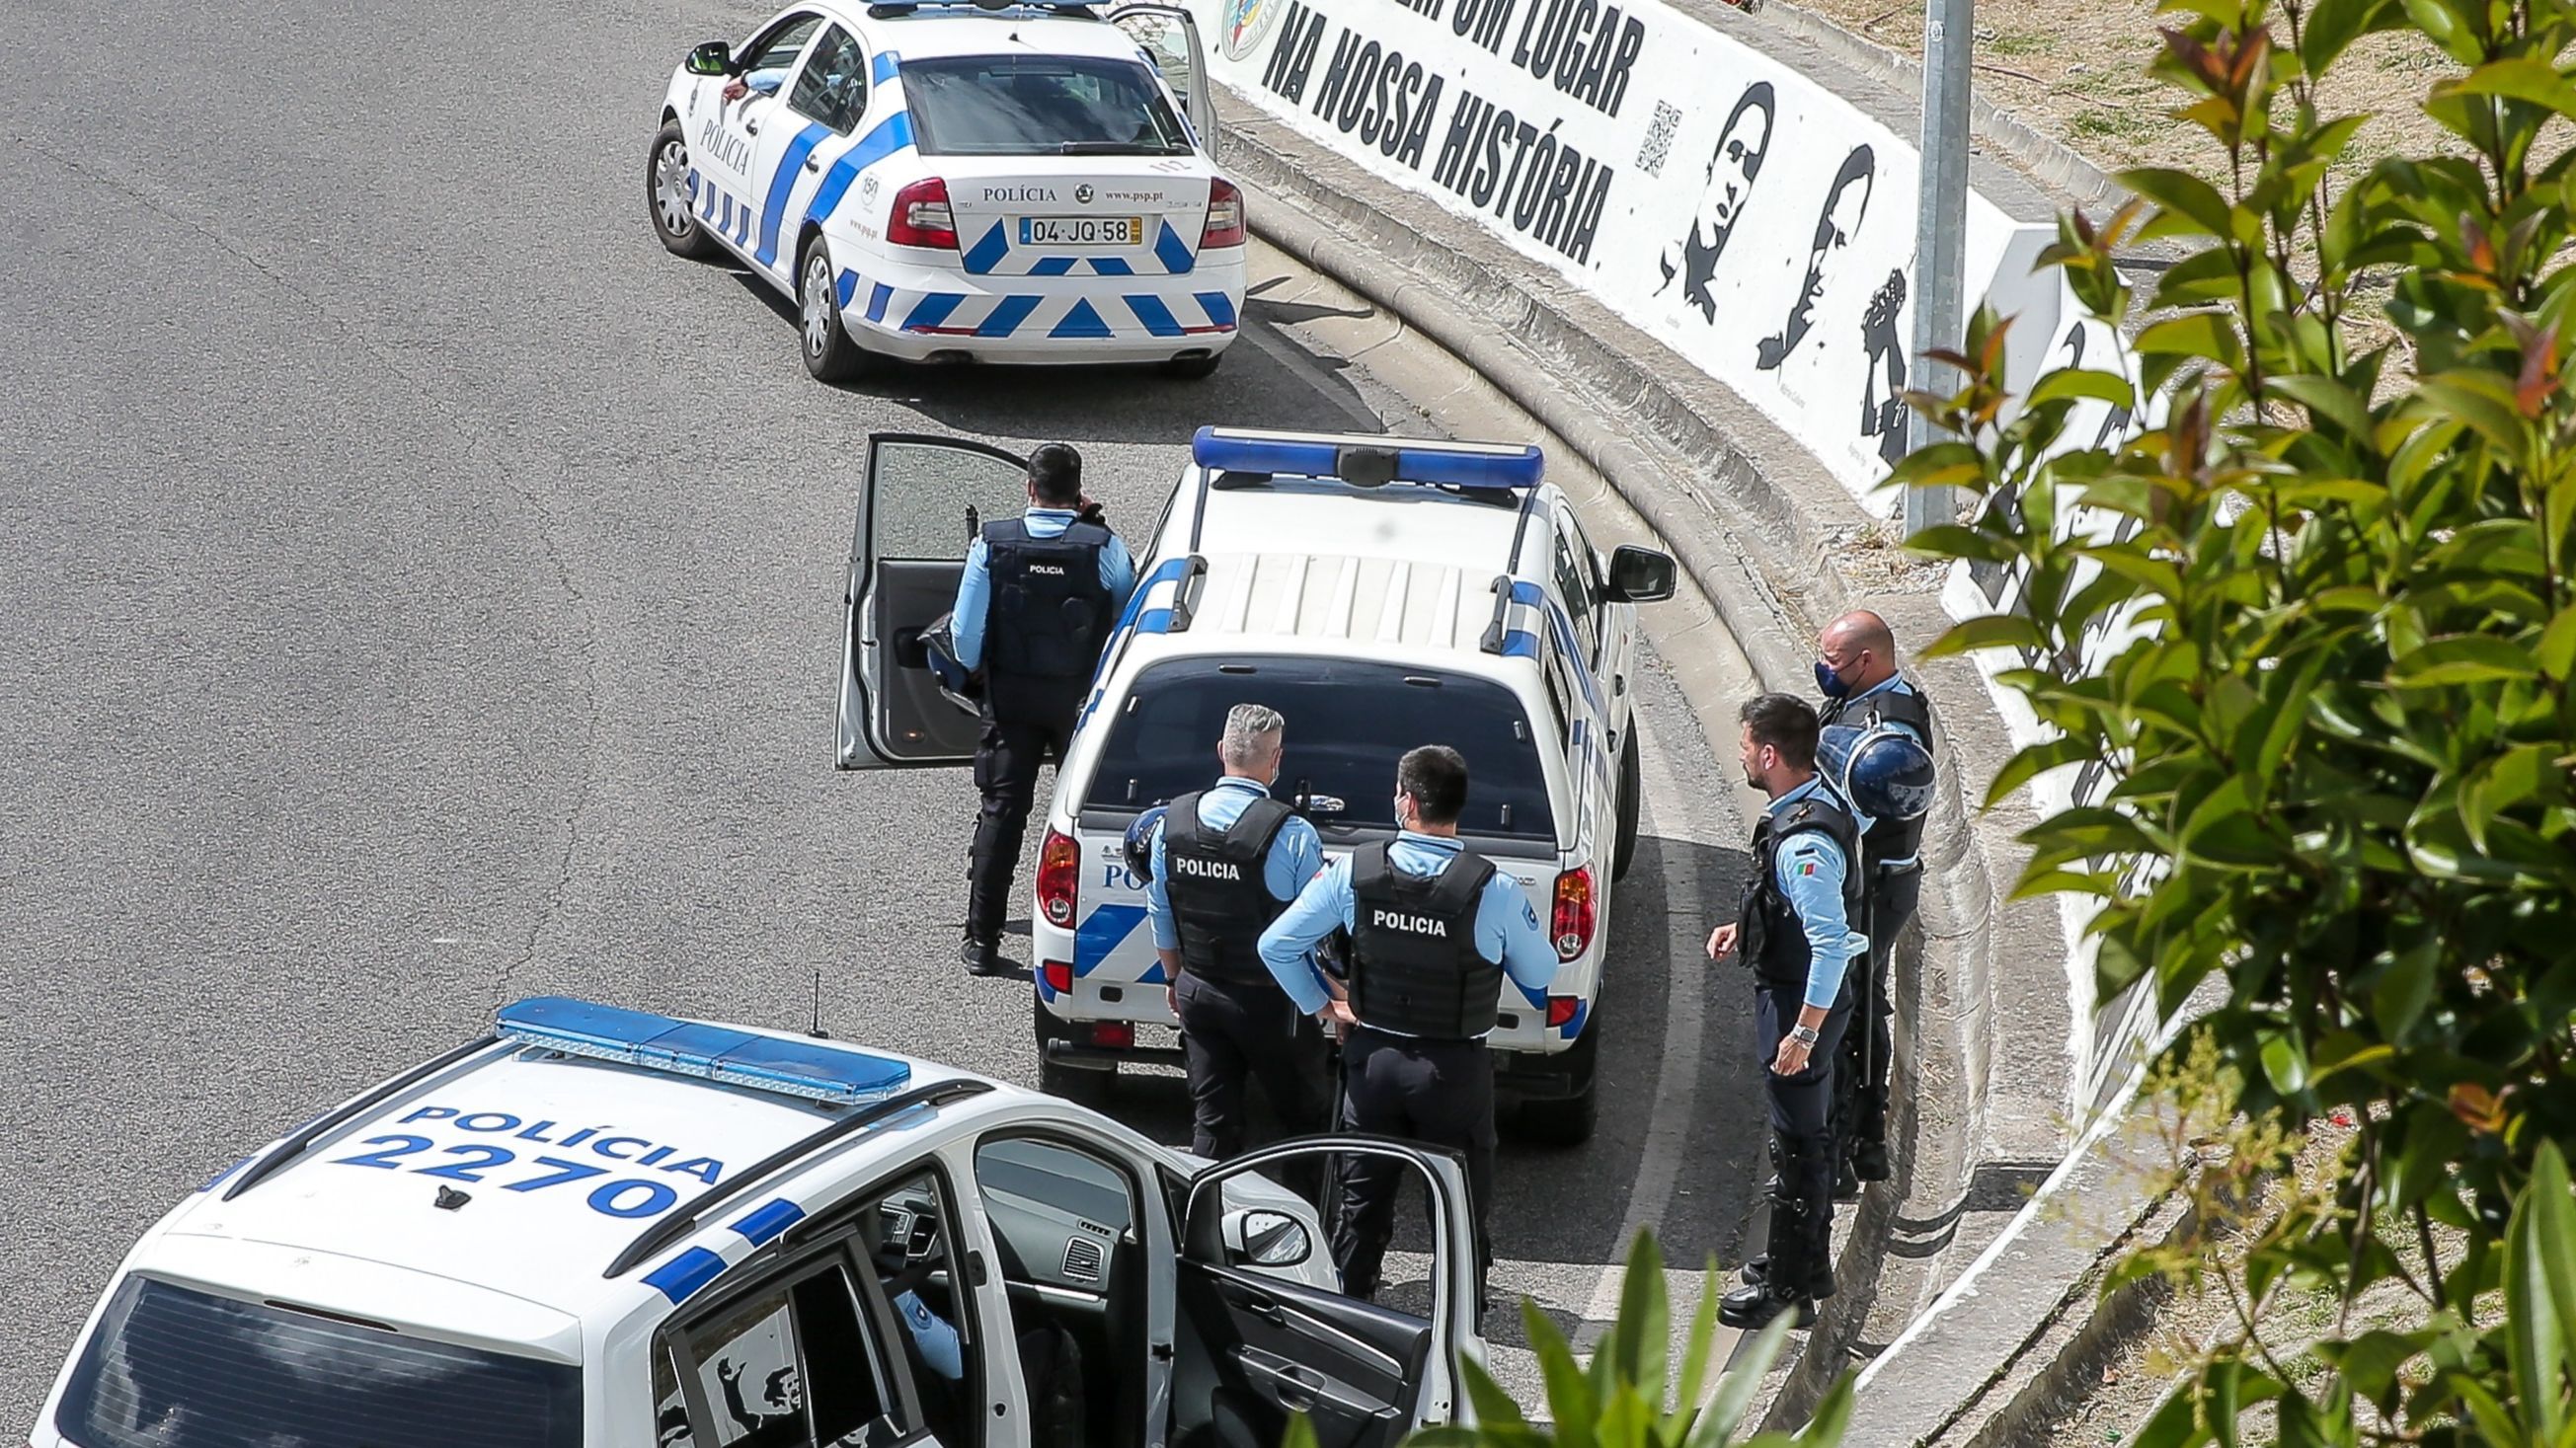 Quatro mortos em tiroteio na cidade portuguesa de Setúbal